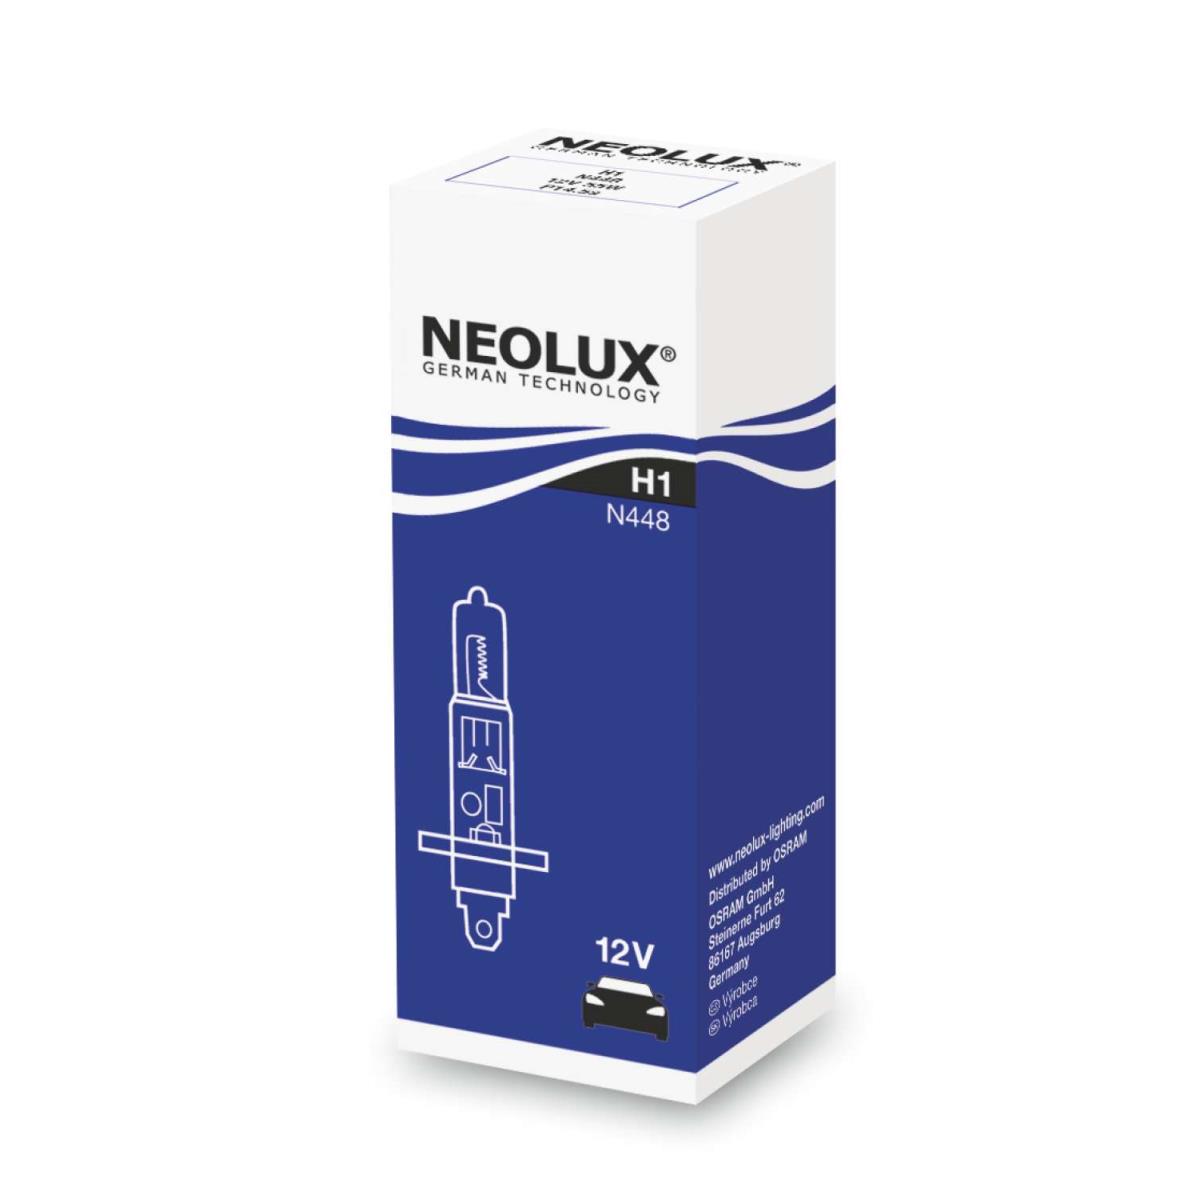 NEOLUX® Chemische Produkte N448